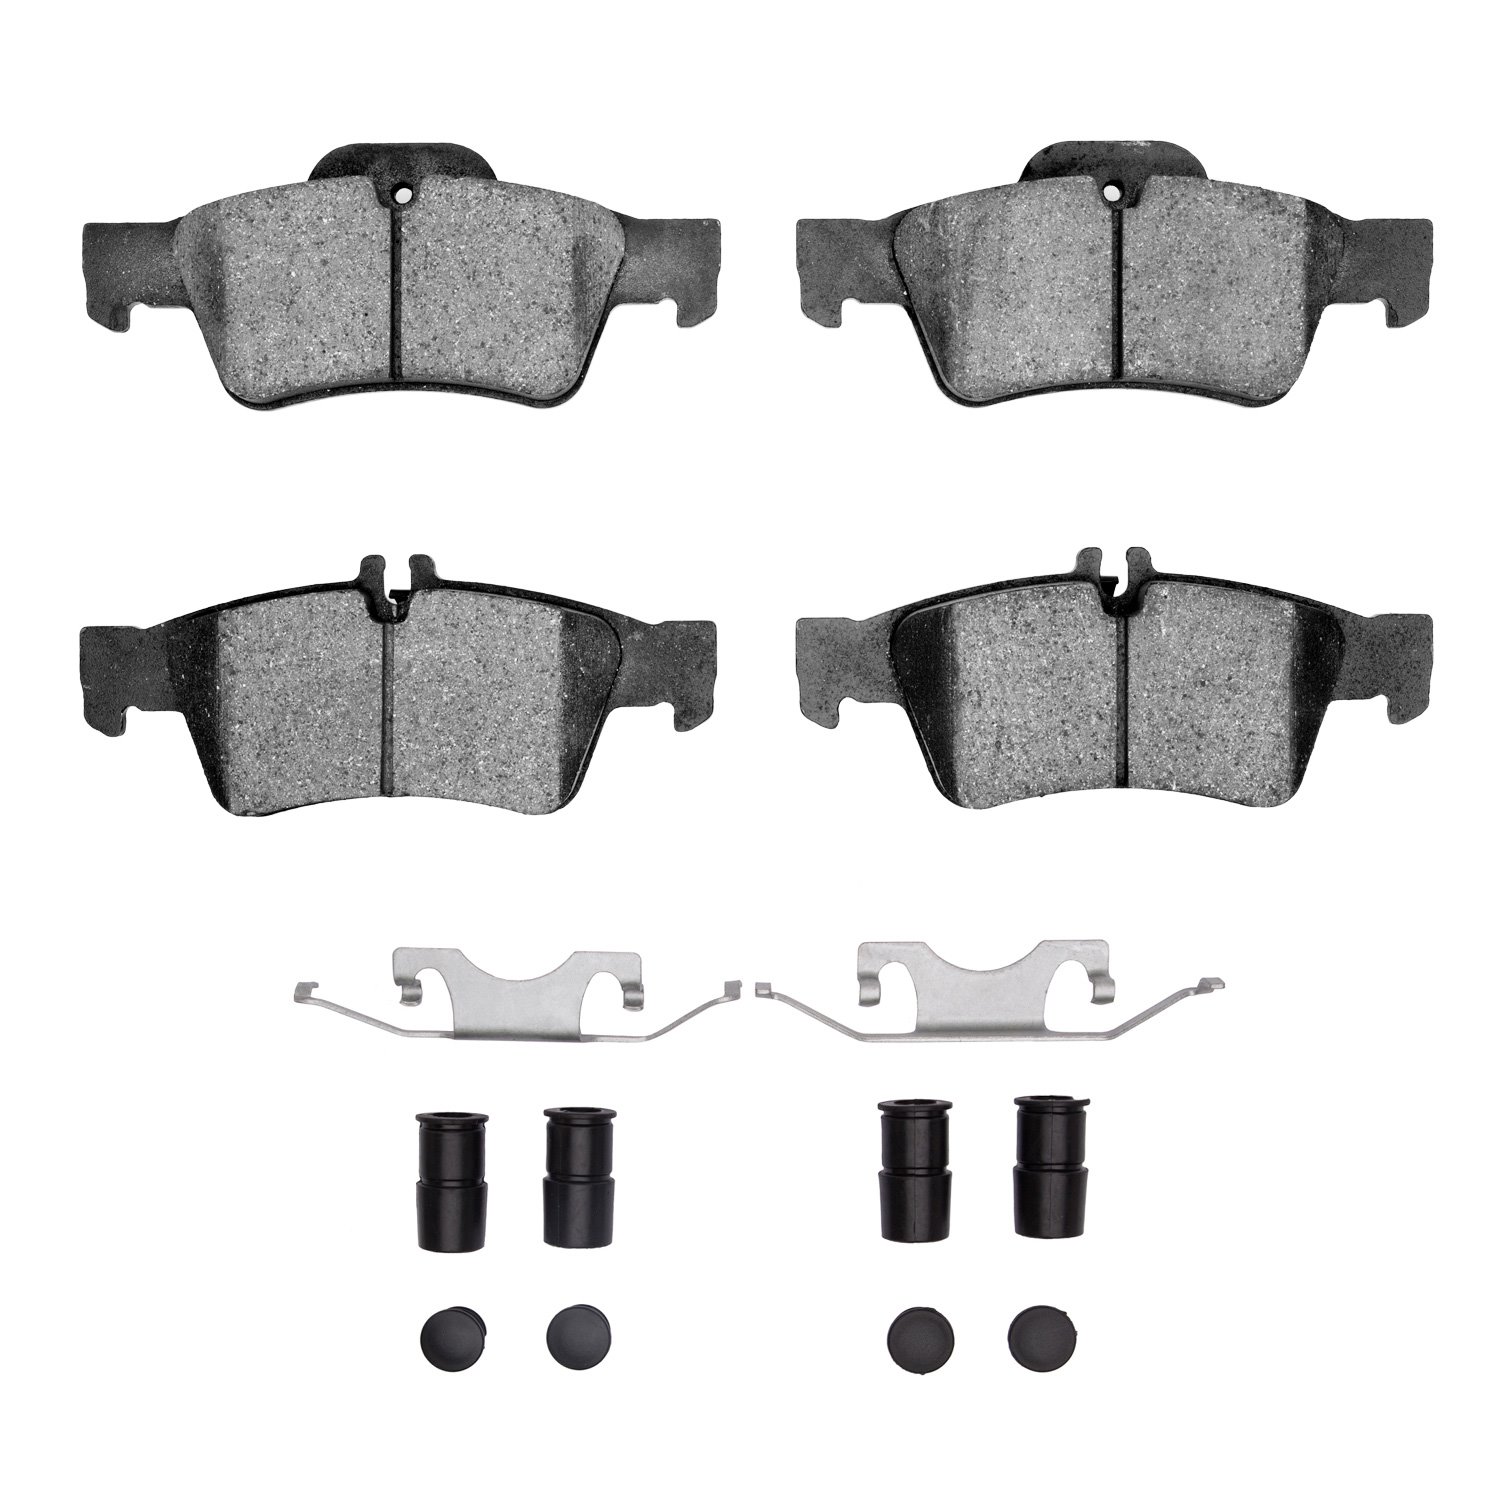 1310-0986-01 3000-Series Ceramic Brake Pads & Hardware Kit, 2002-2018 Mercedes-Benz, Position: Rear